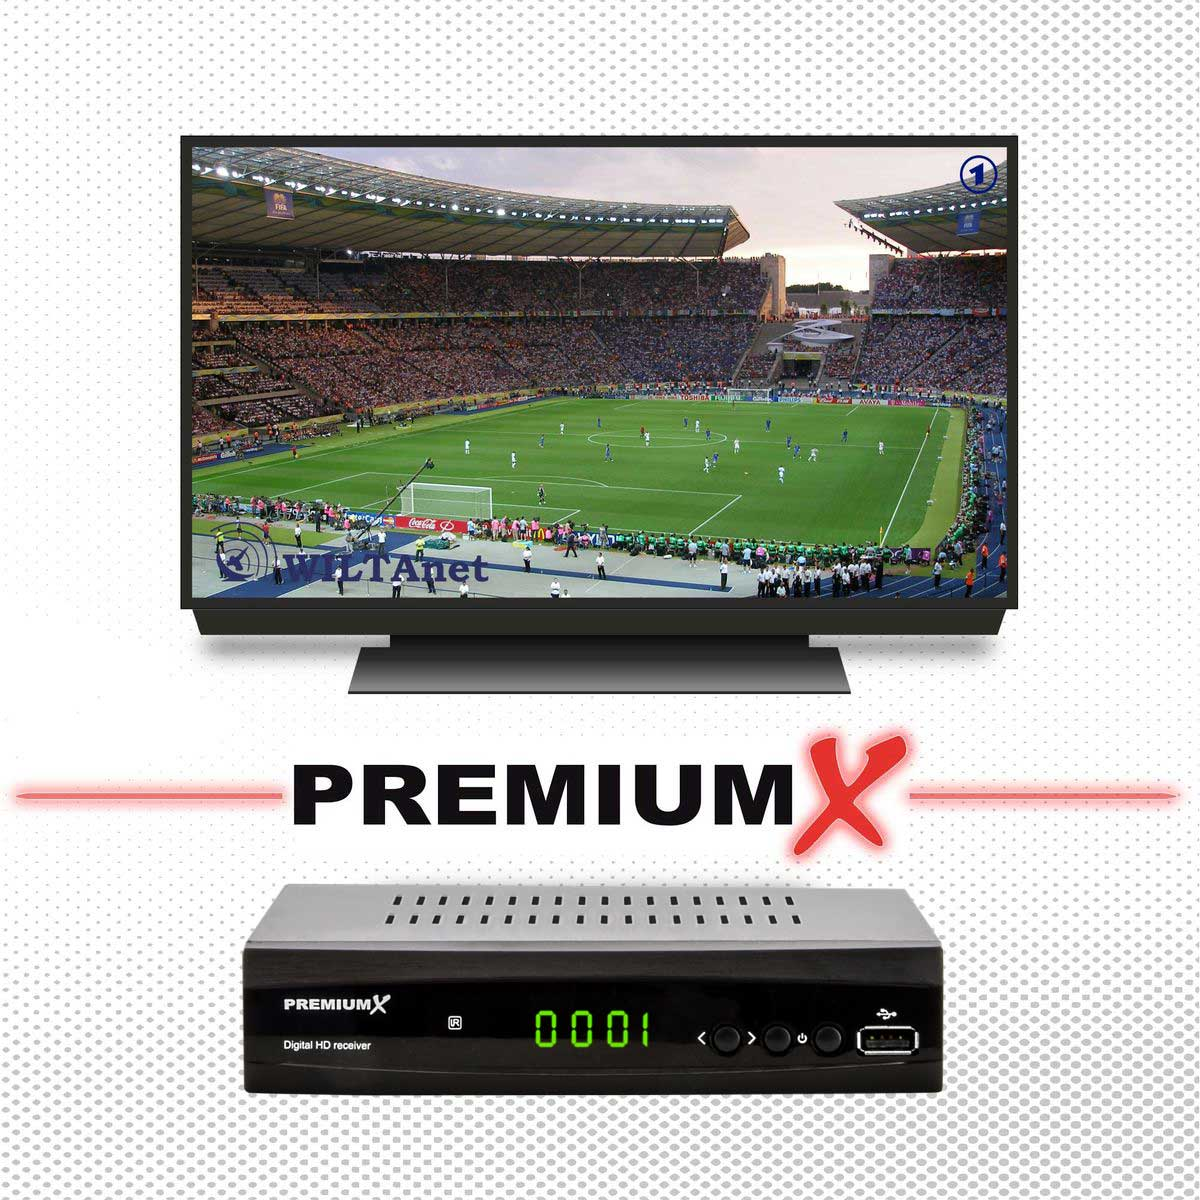 Receiver HDMI Digital schwarz PREMIUMX 521 SAT Antennenkabel SCART Receiver DVB-S2 Sat HD FTA (Schwarz) HD